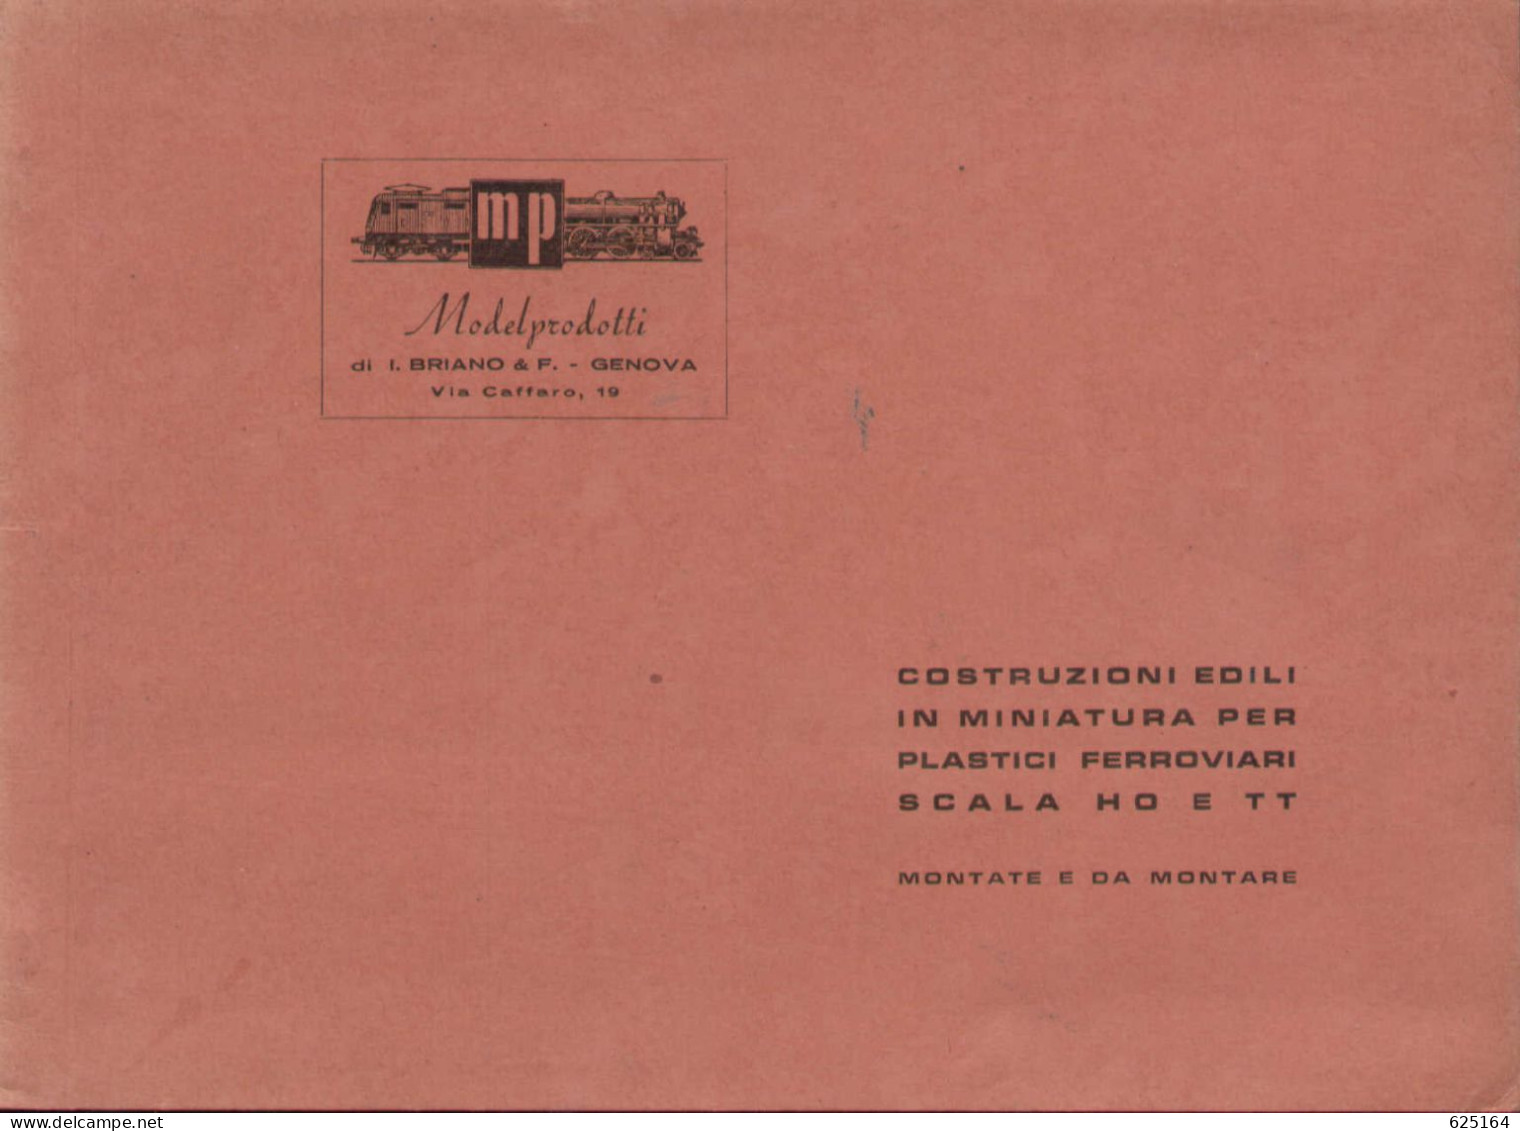 Catalogue MP ModelProdotti 1955? Ed. Italo Briano Genova Accessori HO  - En Italien - Sin Clasificación